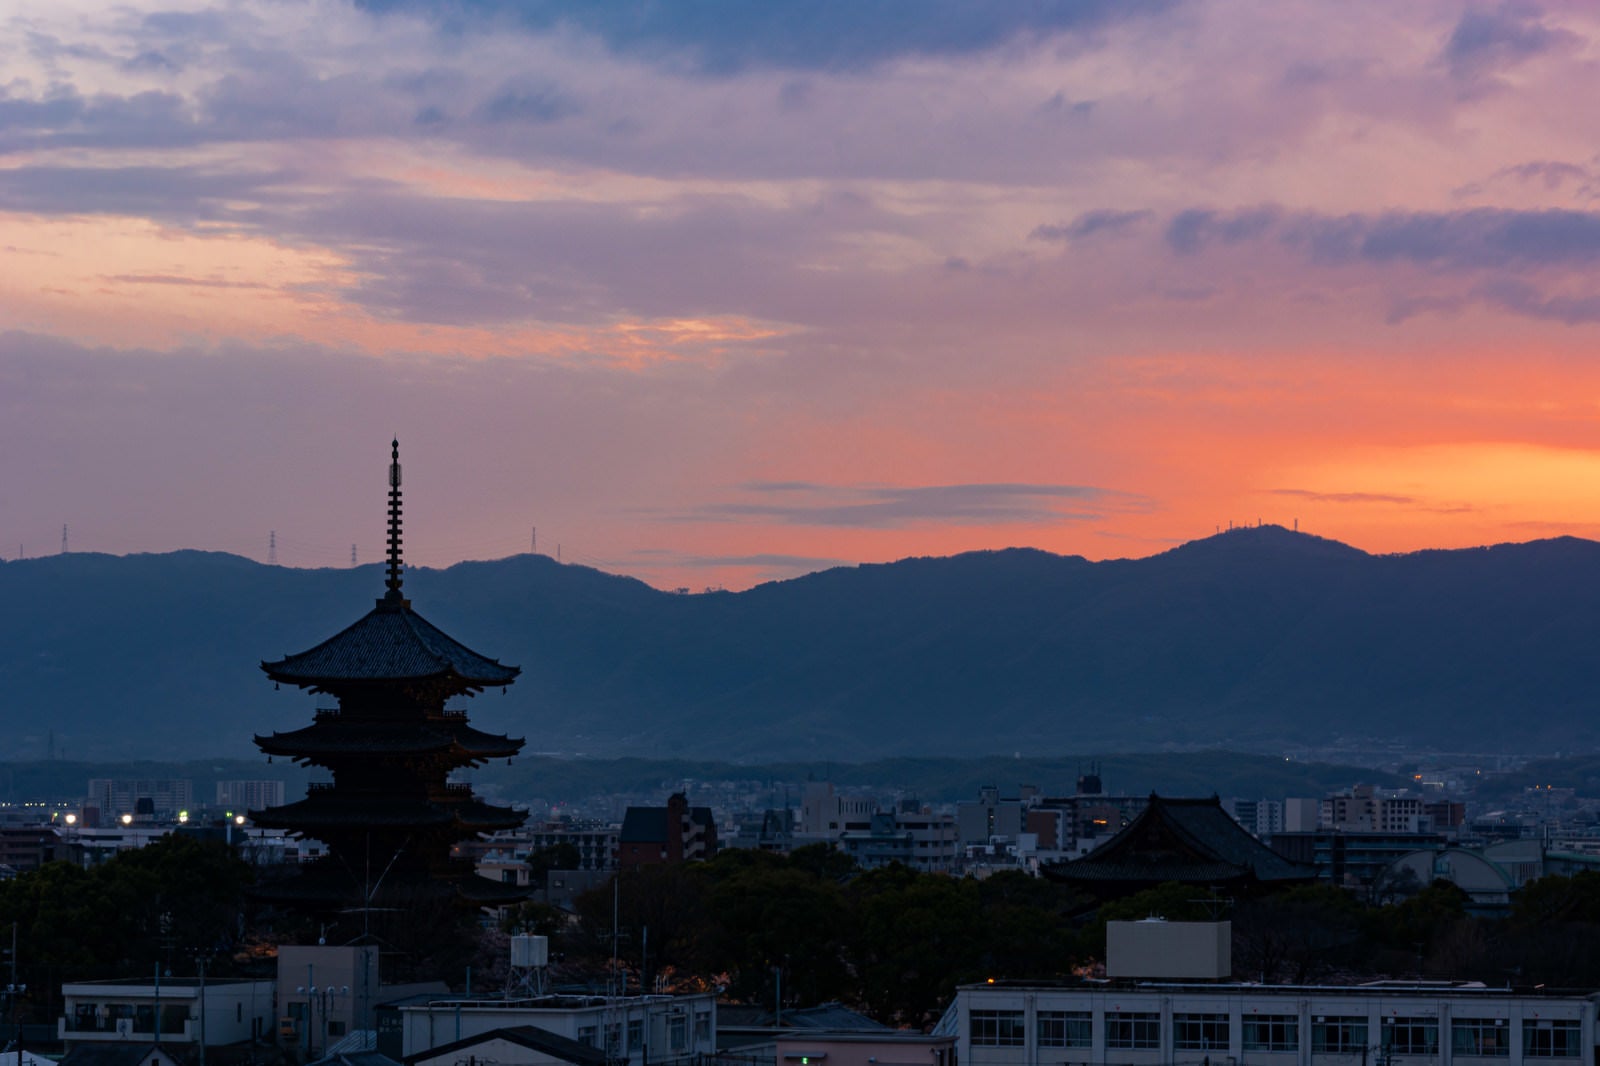 「薄く紅が残る空の下ライトアップの始まった東寺」の写真